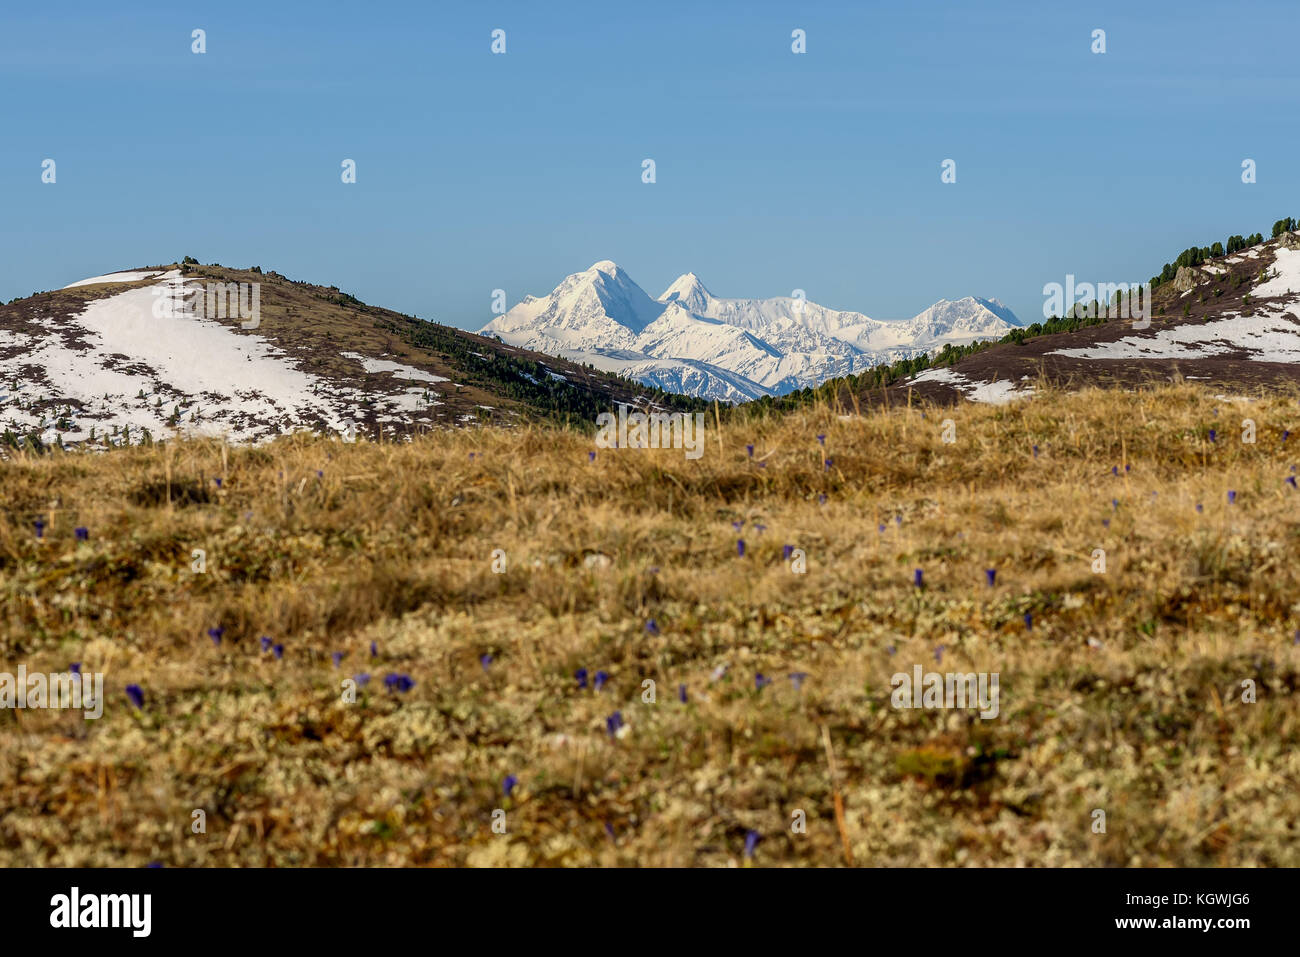 Malerische Aussicht mit trockenem Gras und Blumen auf einem Hintergrund der Berge mit Schnee an einem sonnigen Tag abgedeckt Stockfoto